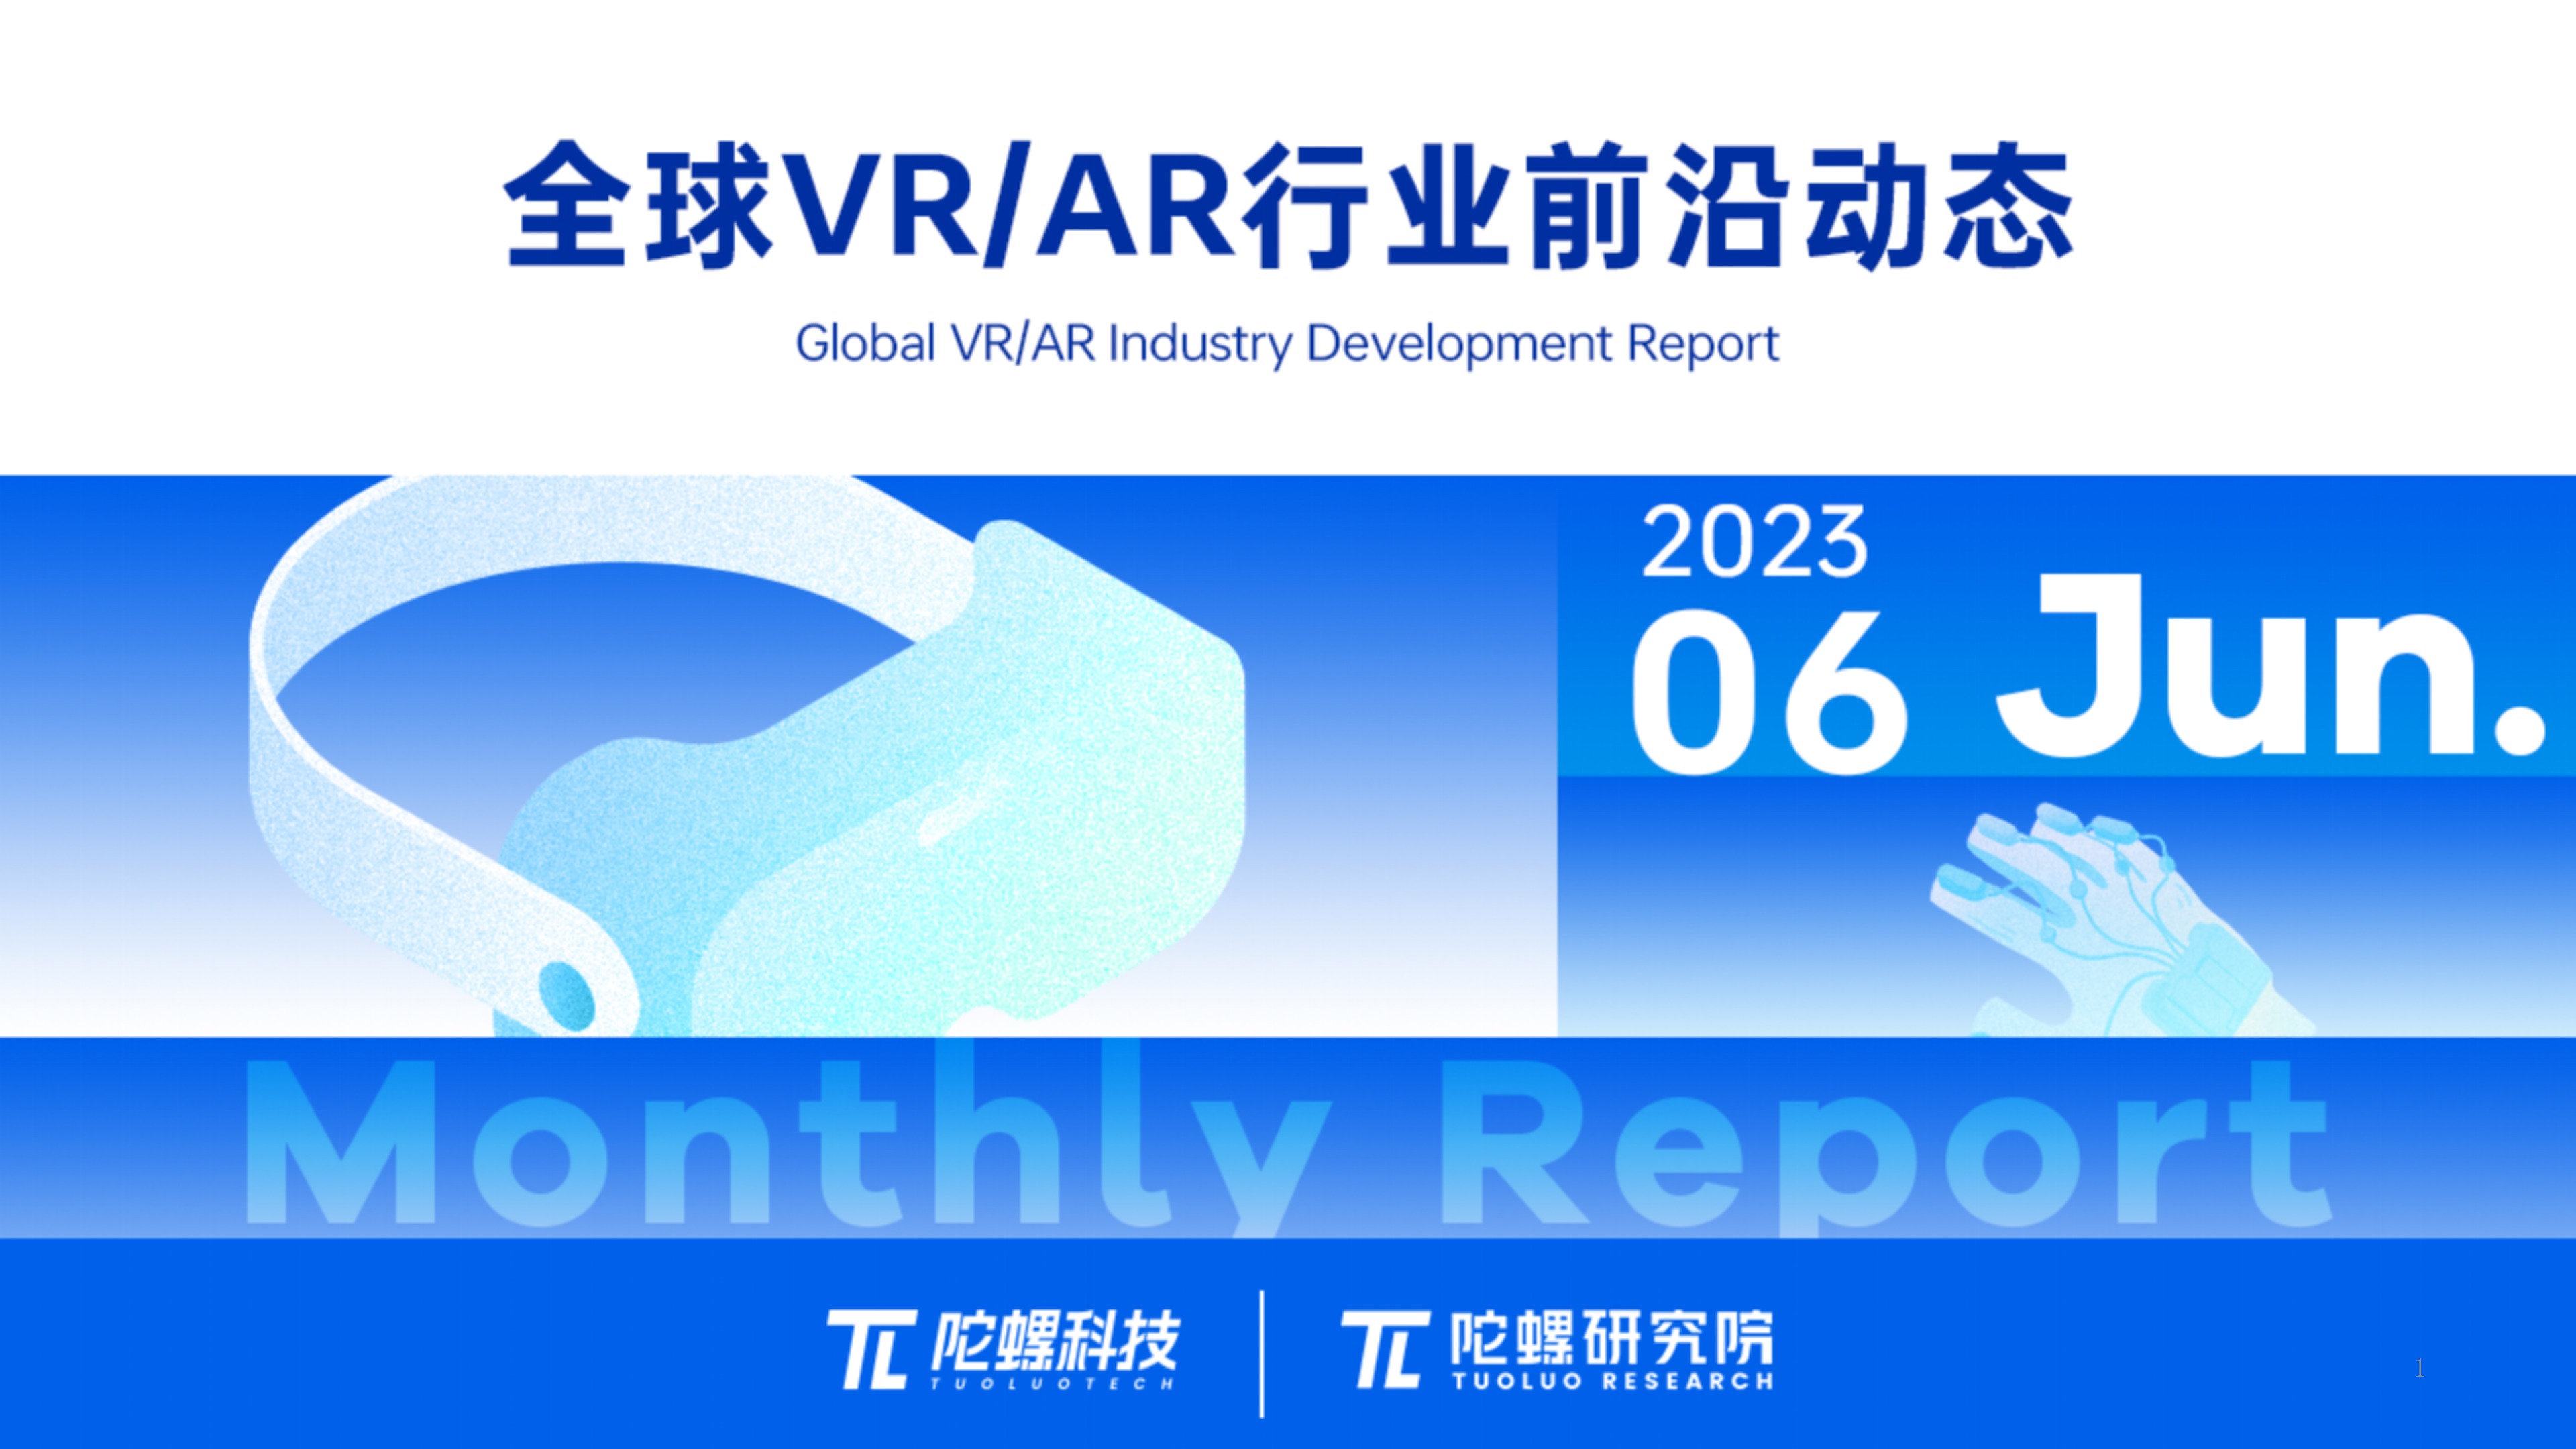 2023年6月VR/AR行业月报 | VR陀螺